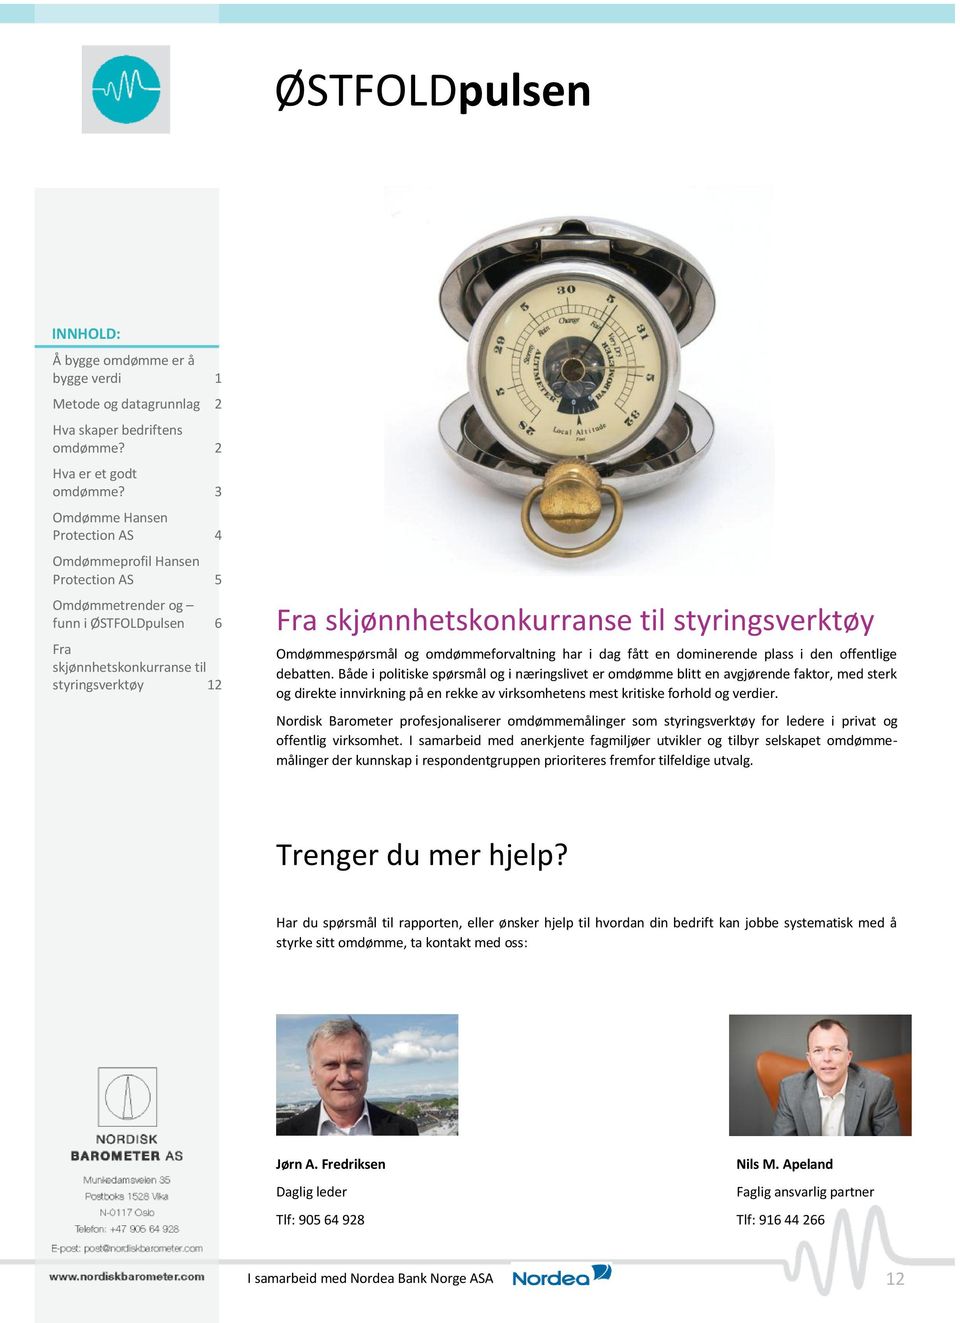 Nordisk Barometer profesjonaliserer omdømmemålinger som styringsverktøy for ledere i privat og offentlig virksomhet.